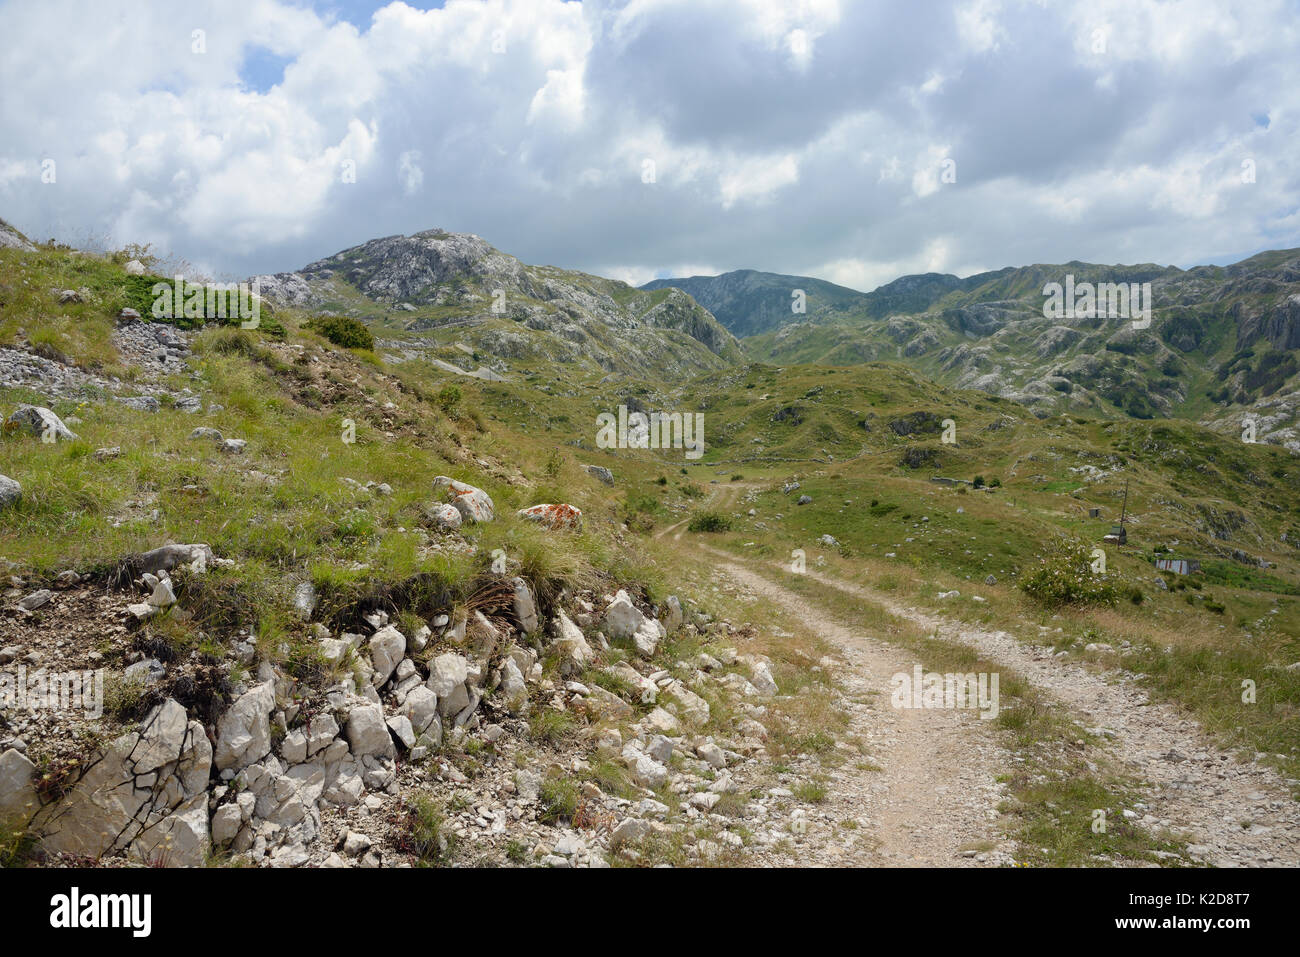 Camino hacia las montañas de piedra caliza del Parque Nacional de Durmitor, Montenegro, julio de 2014. Foto de stock